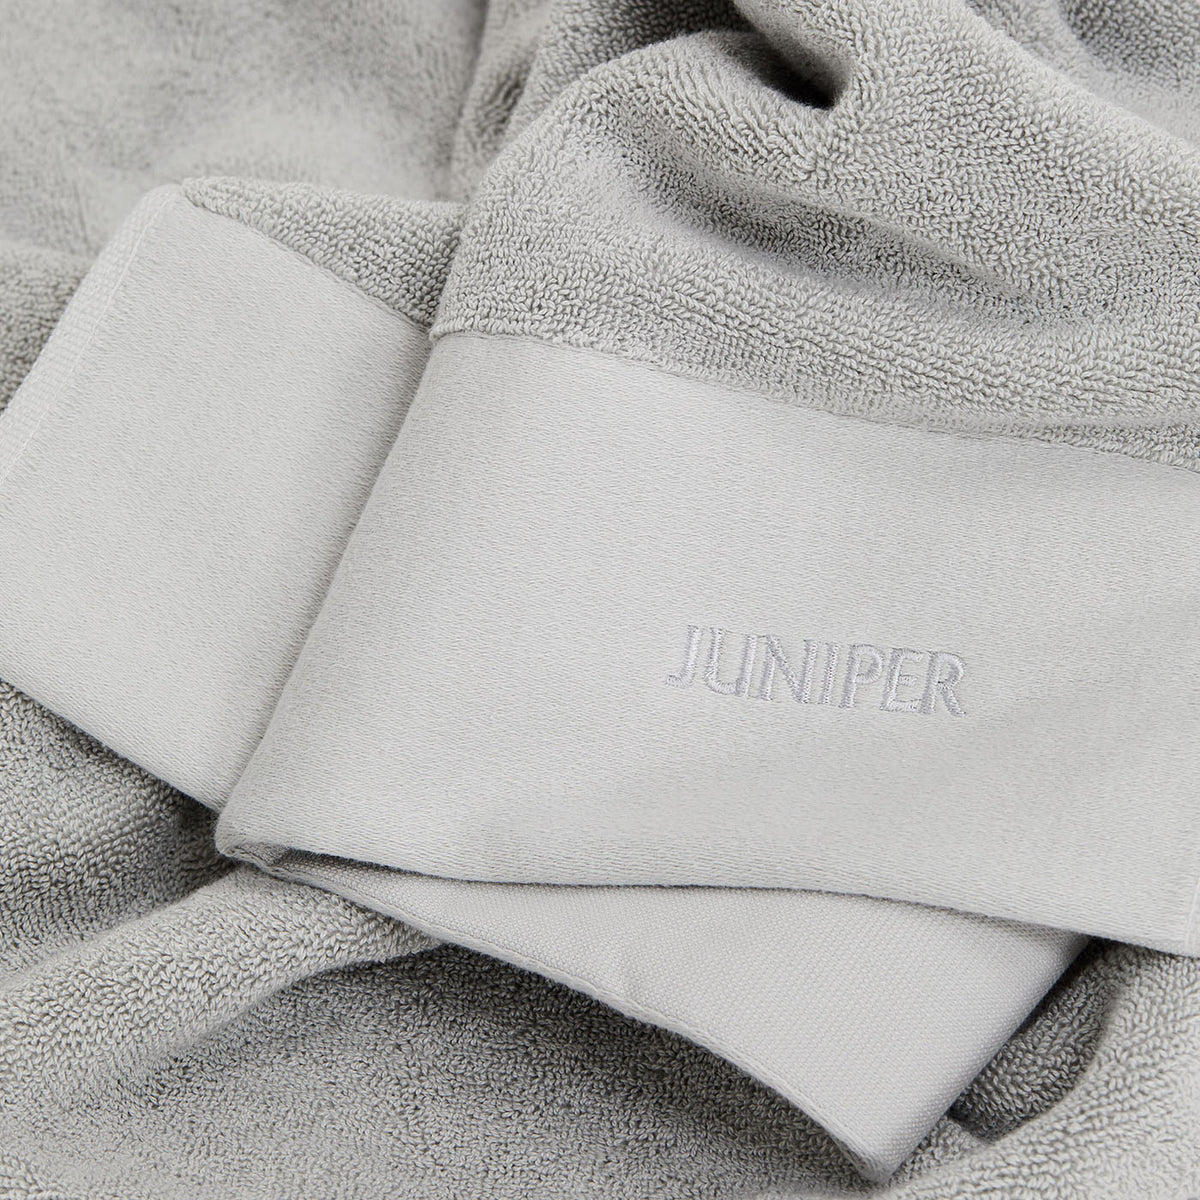 The Hand Towels - Stone Grey - Juniper